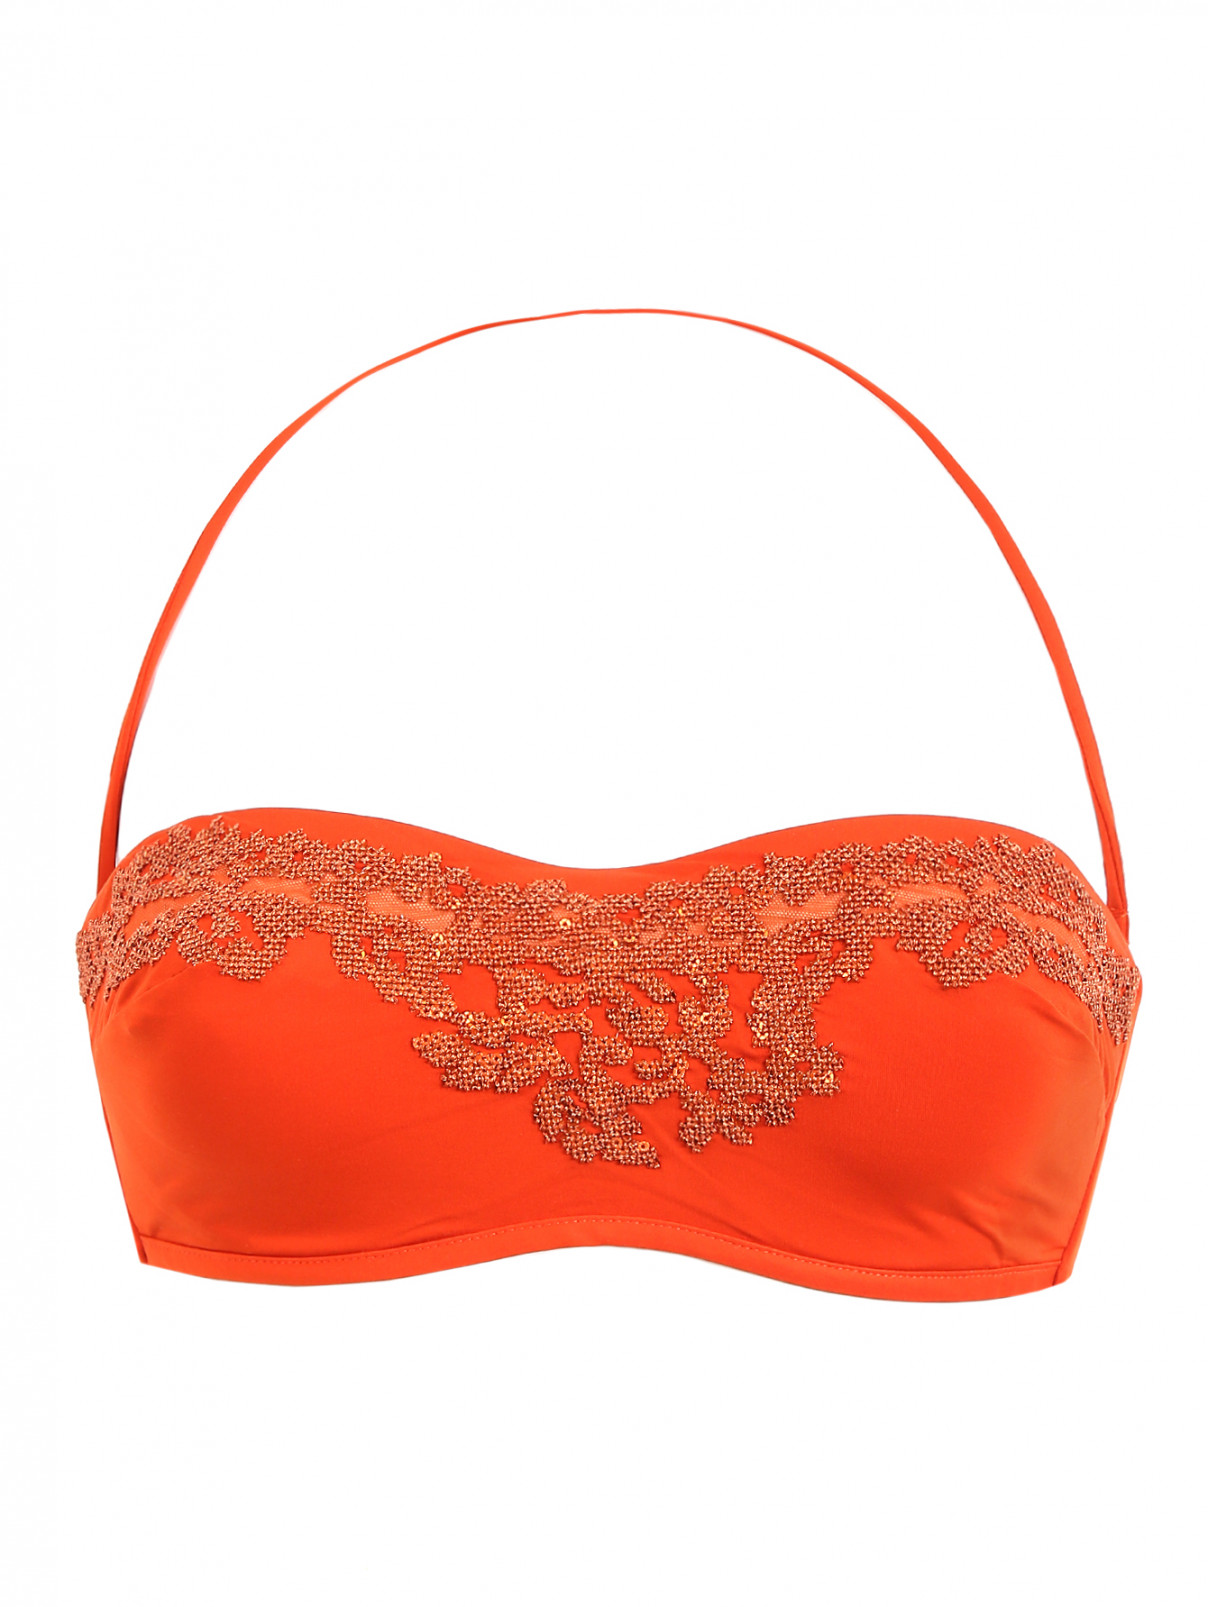 Купальник верх с вышивкой La Perla  –  Общий вид  – Цвет:  Оранжевый